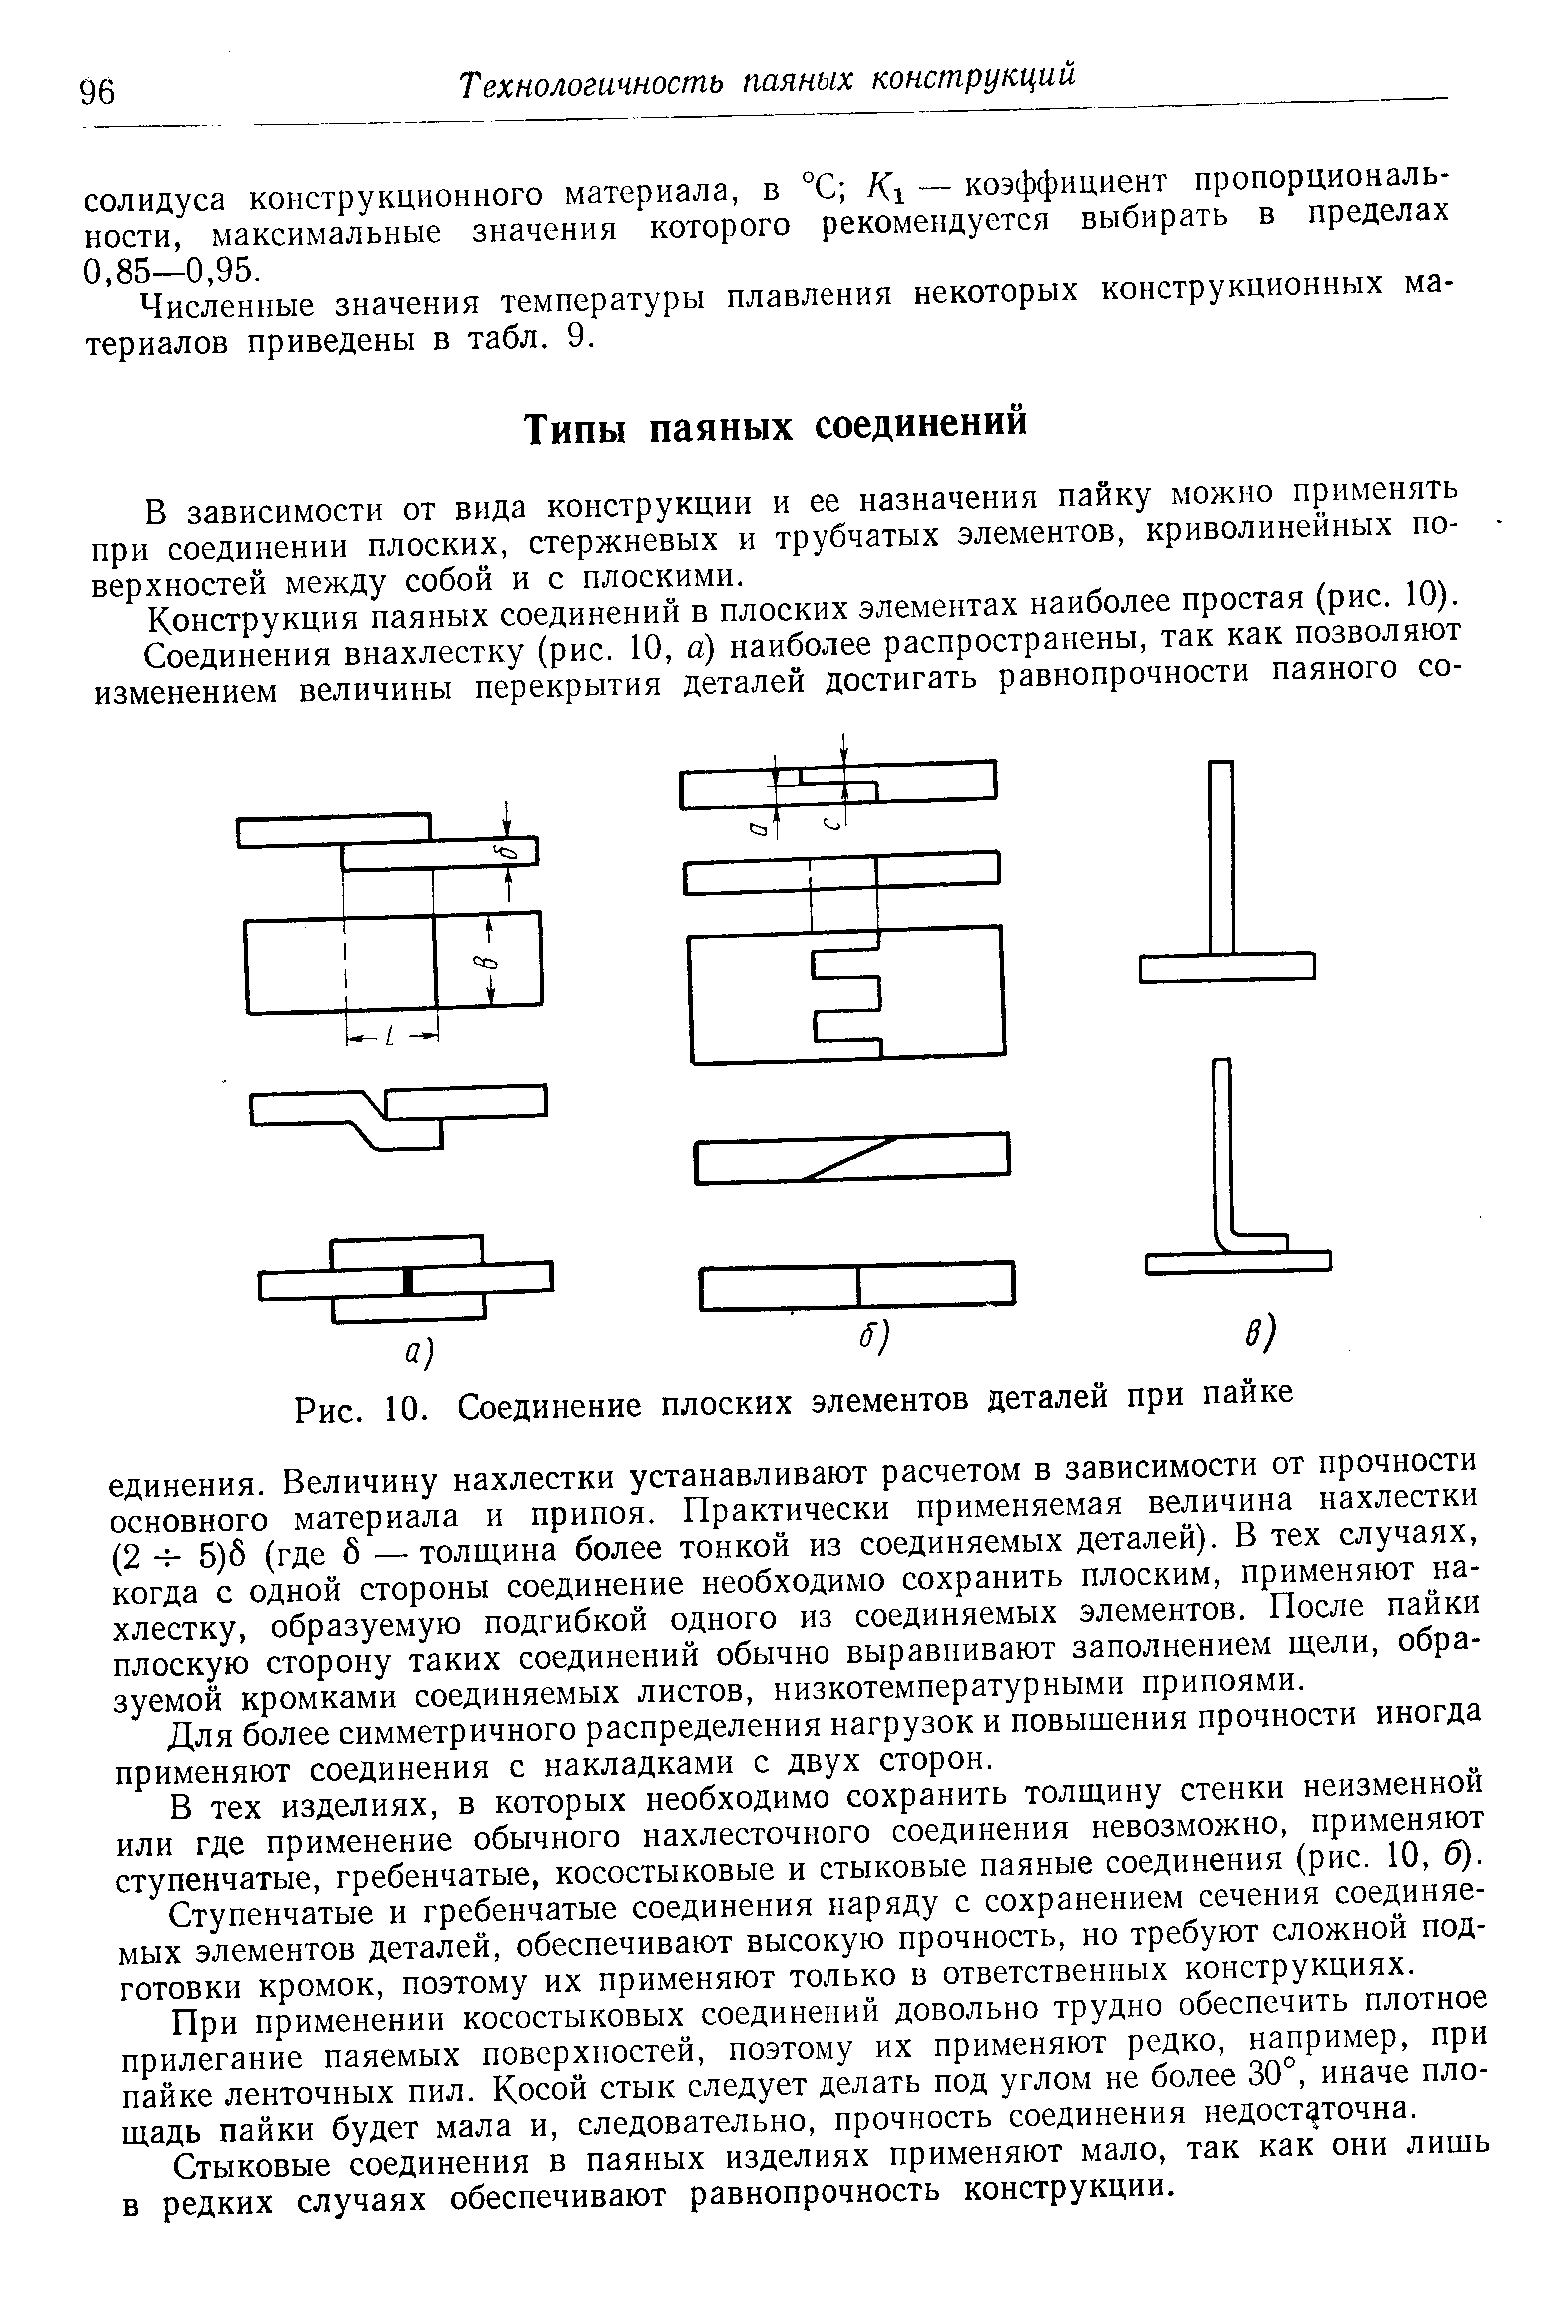 Конструкция паяных соединений в плоских элементах наиболее простая (рис. 10).
